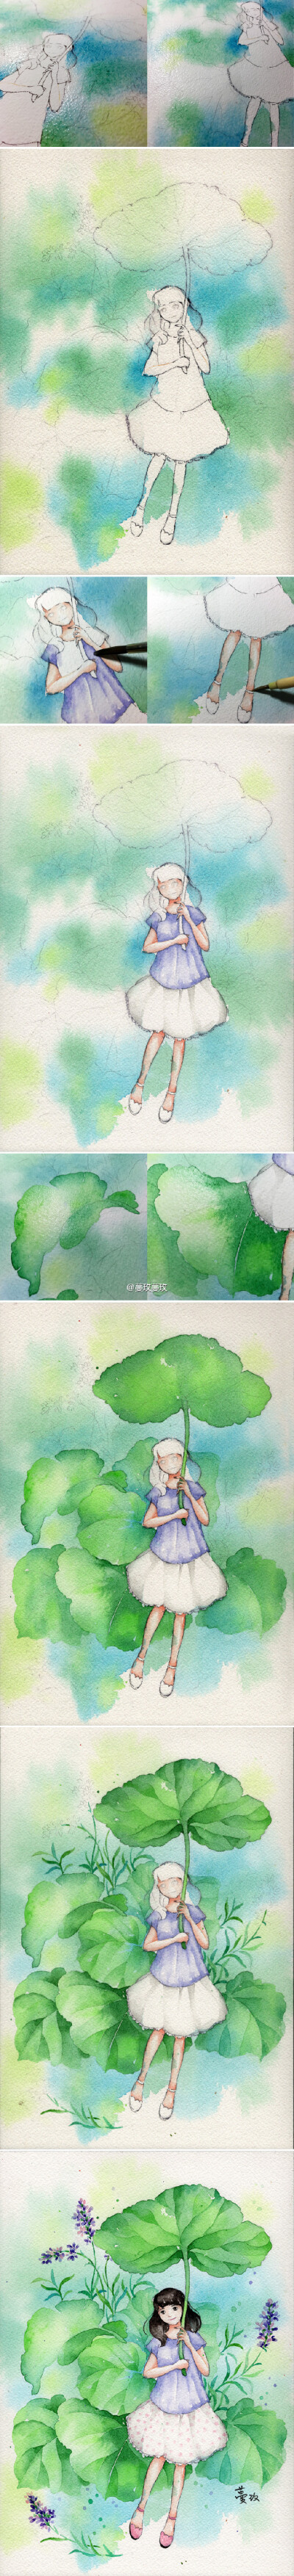 #自画像# #水彩步骤图# 龙猫举着的大叶子，来自北海道的秋田蕗（蜂斗菜）。顺便还有富良野的薰衣草，是某一年夏天的记忆。